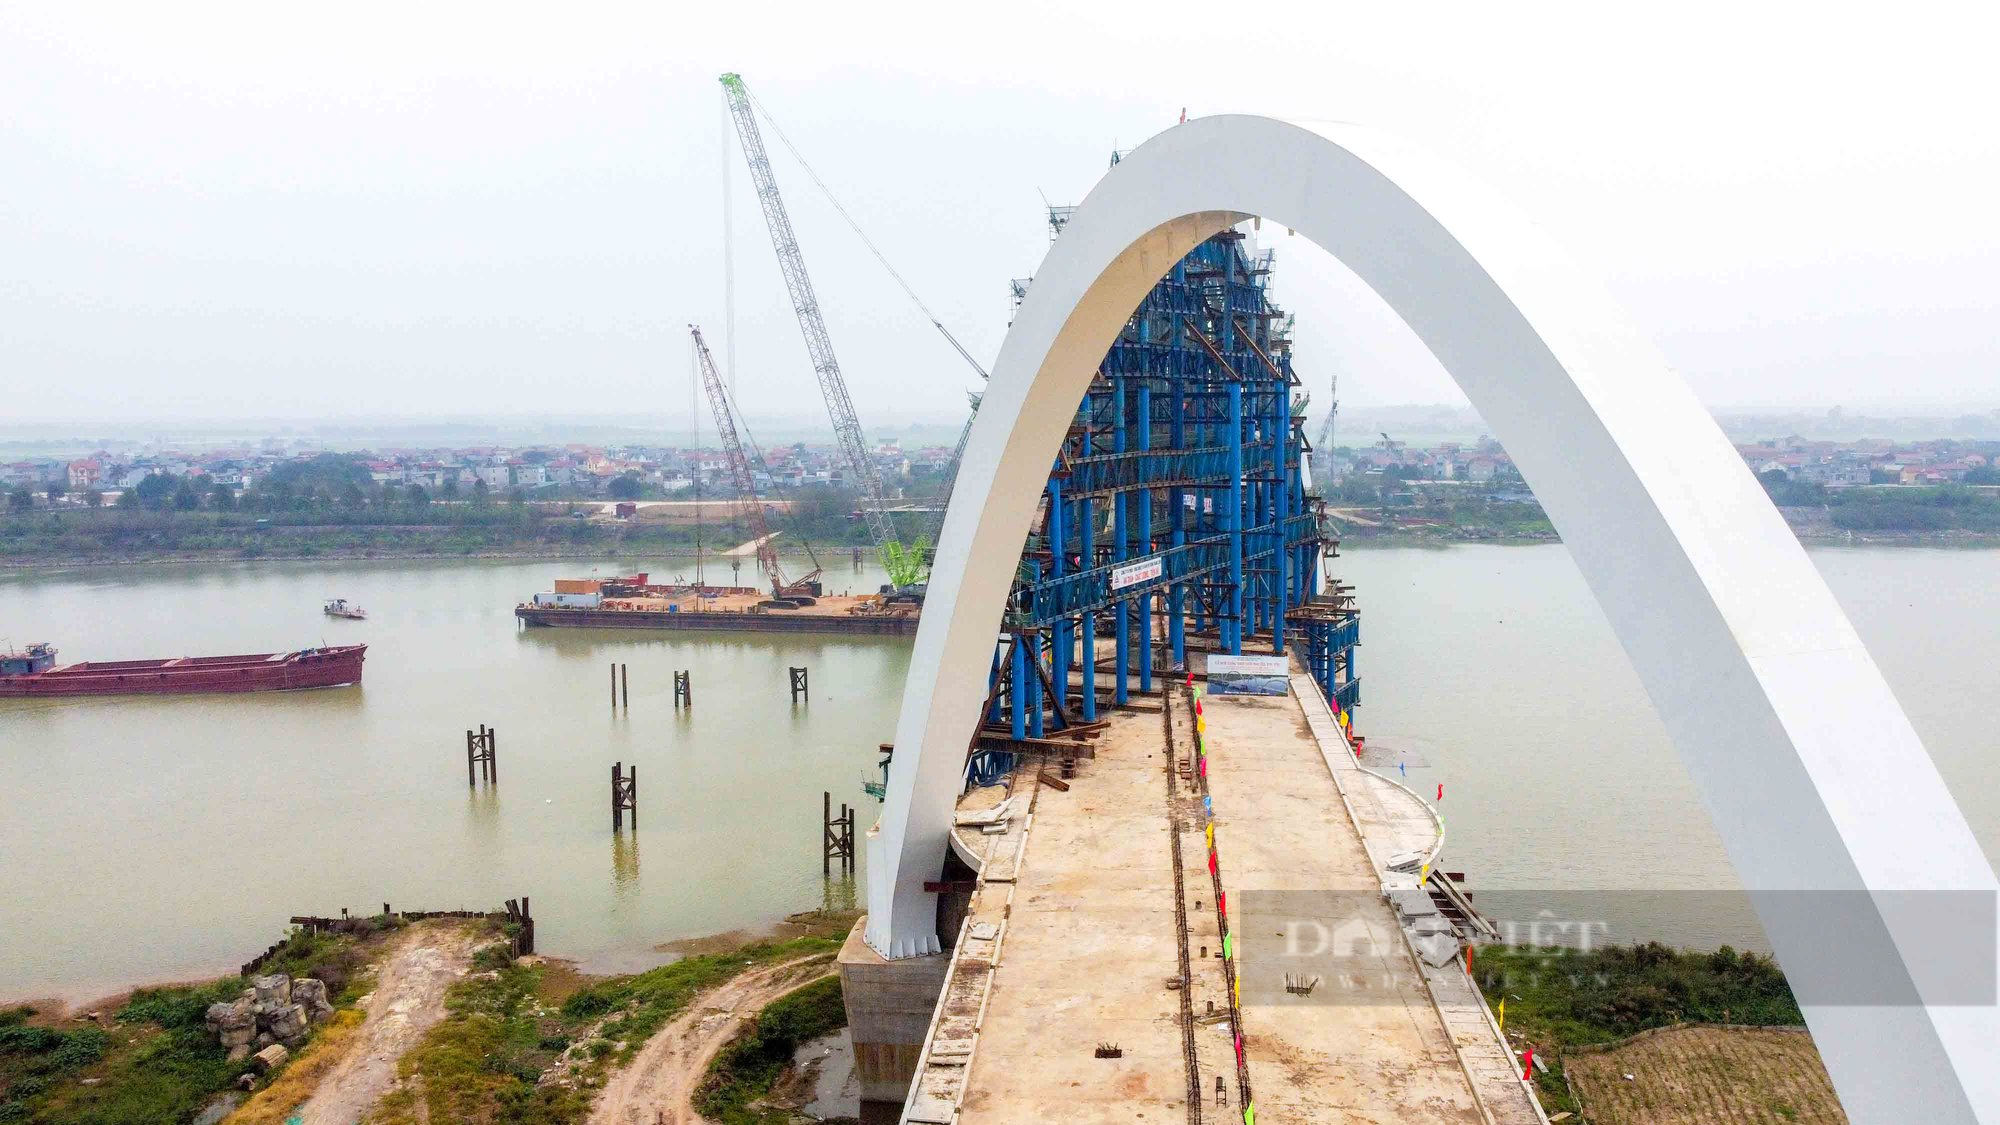 Cầu vòm thép cao nhất Việt Nam sắp được hoàn thành tại Bắc Ninh - Ảnh 2.